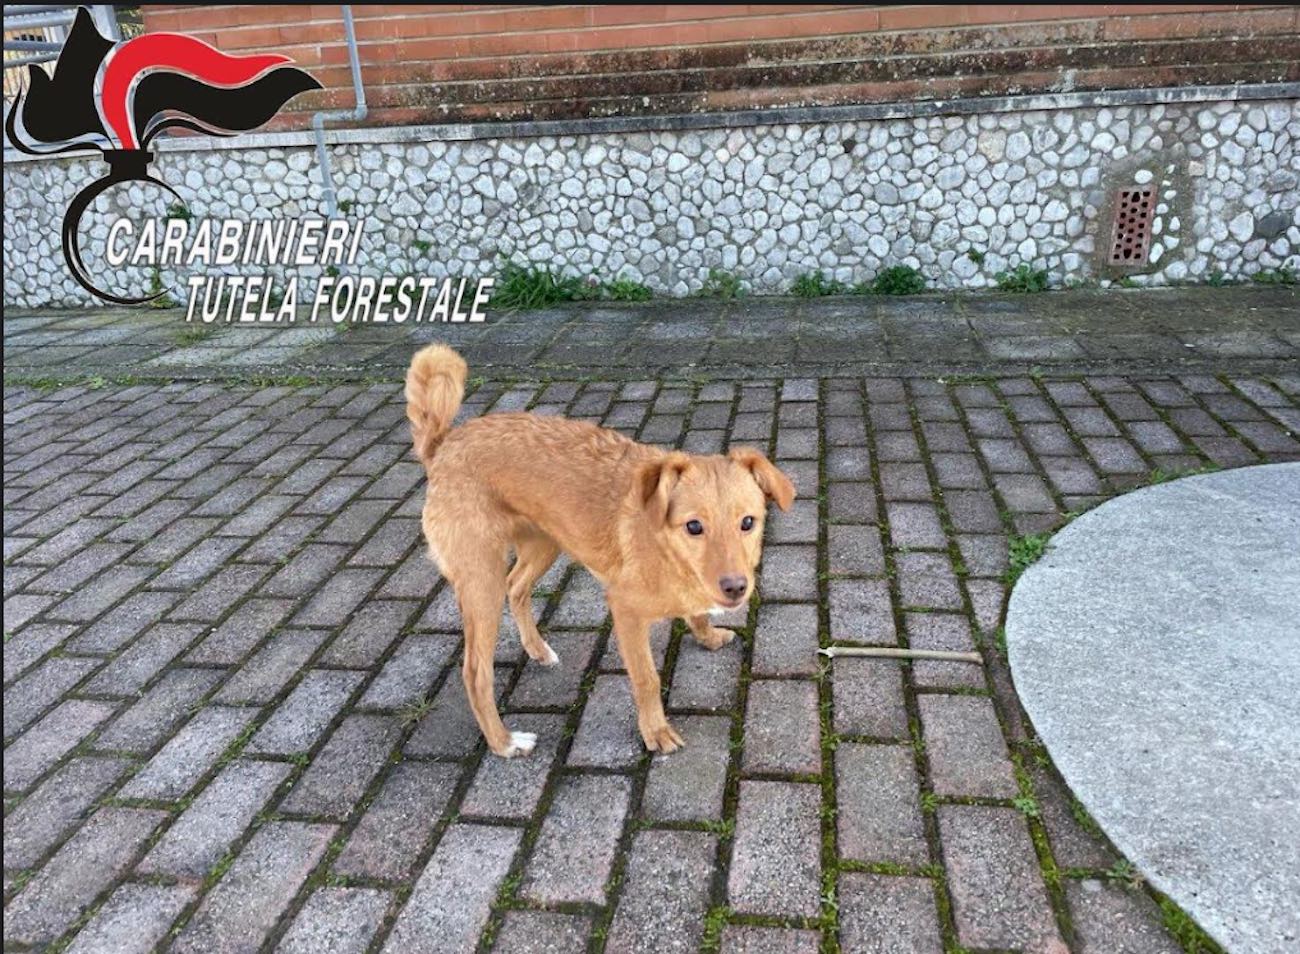 Carabinieri Forestale di Castel Volturno soccorrono cane abbandonato